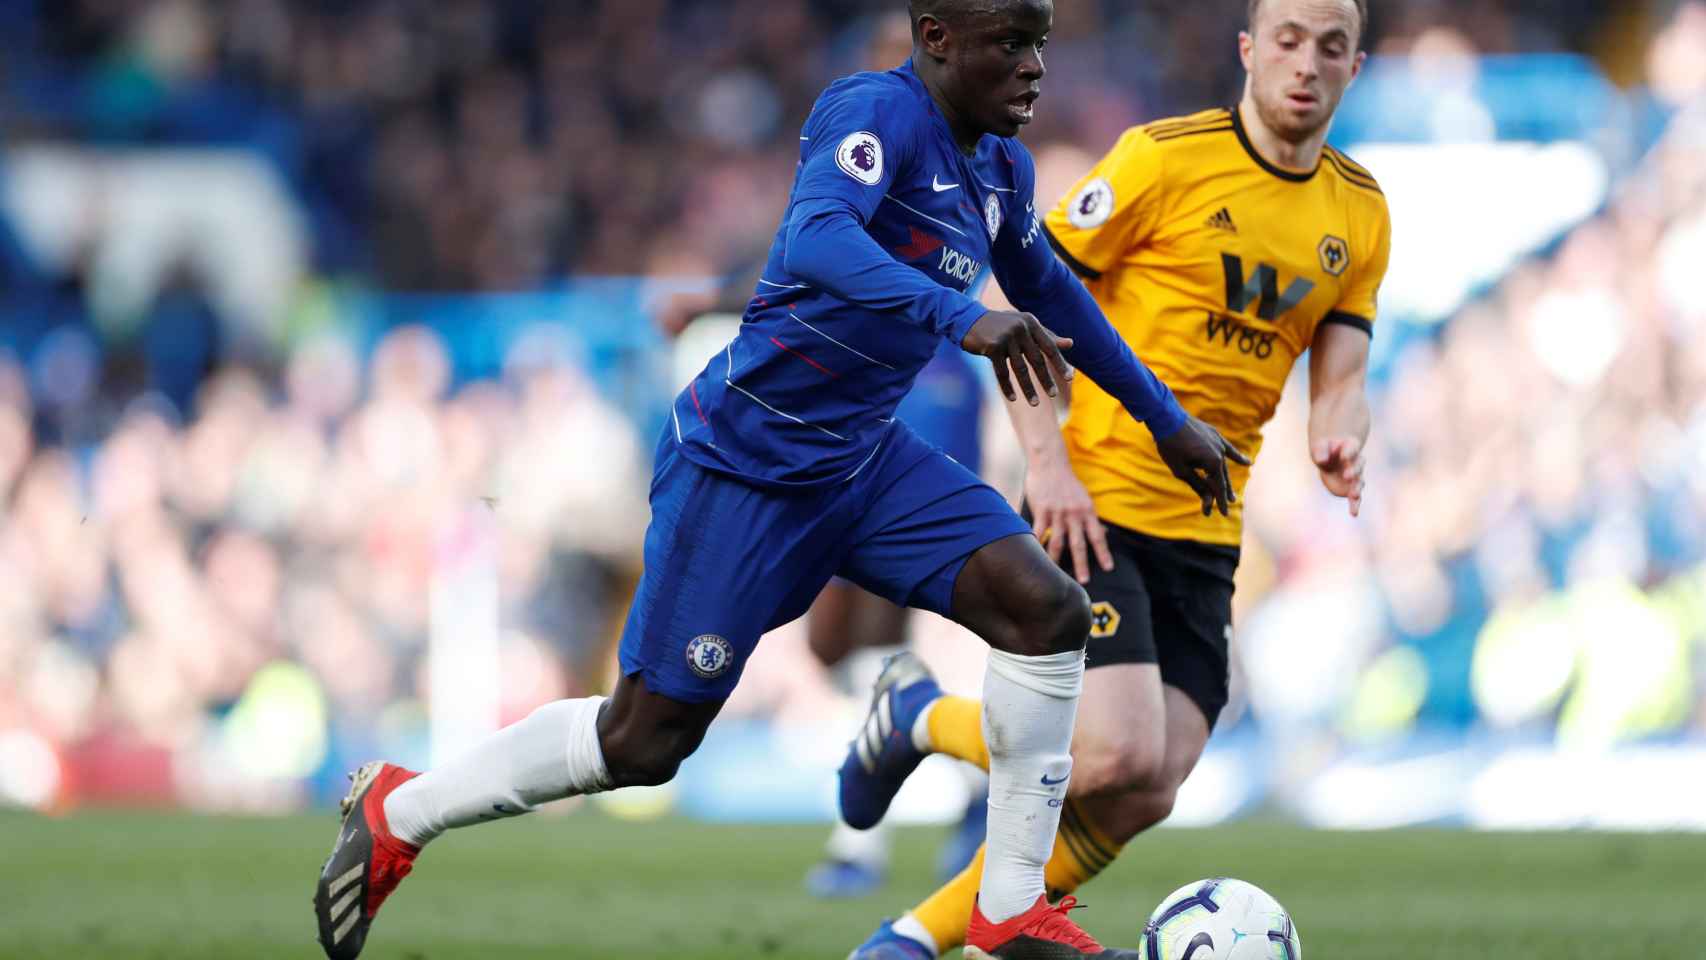 Kanté maneja el balón ante Diogo Jota en el Chelsea - Wolverhampton de la Premier League